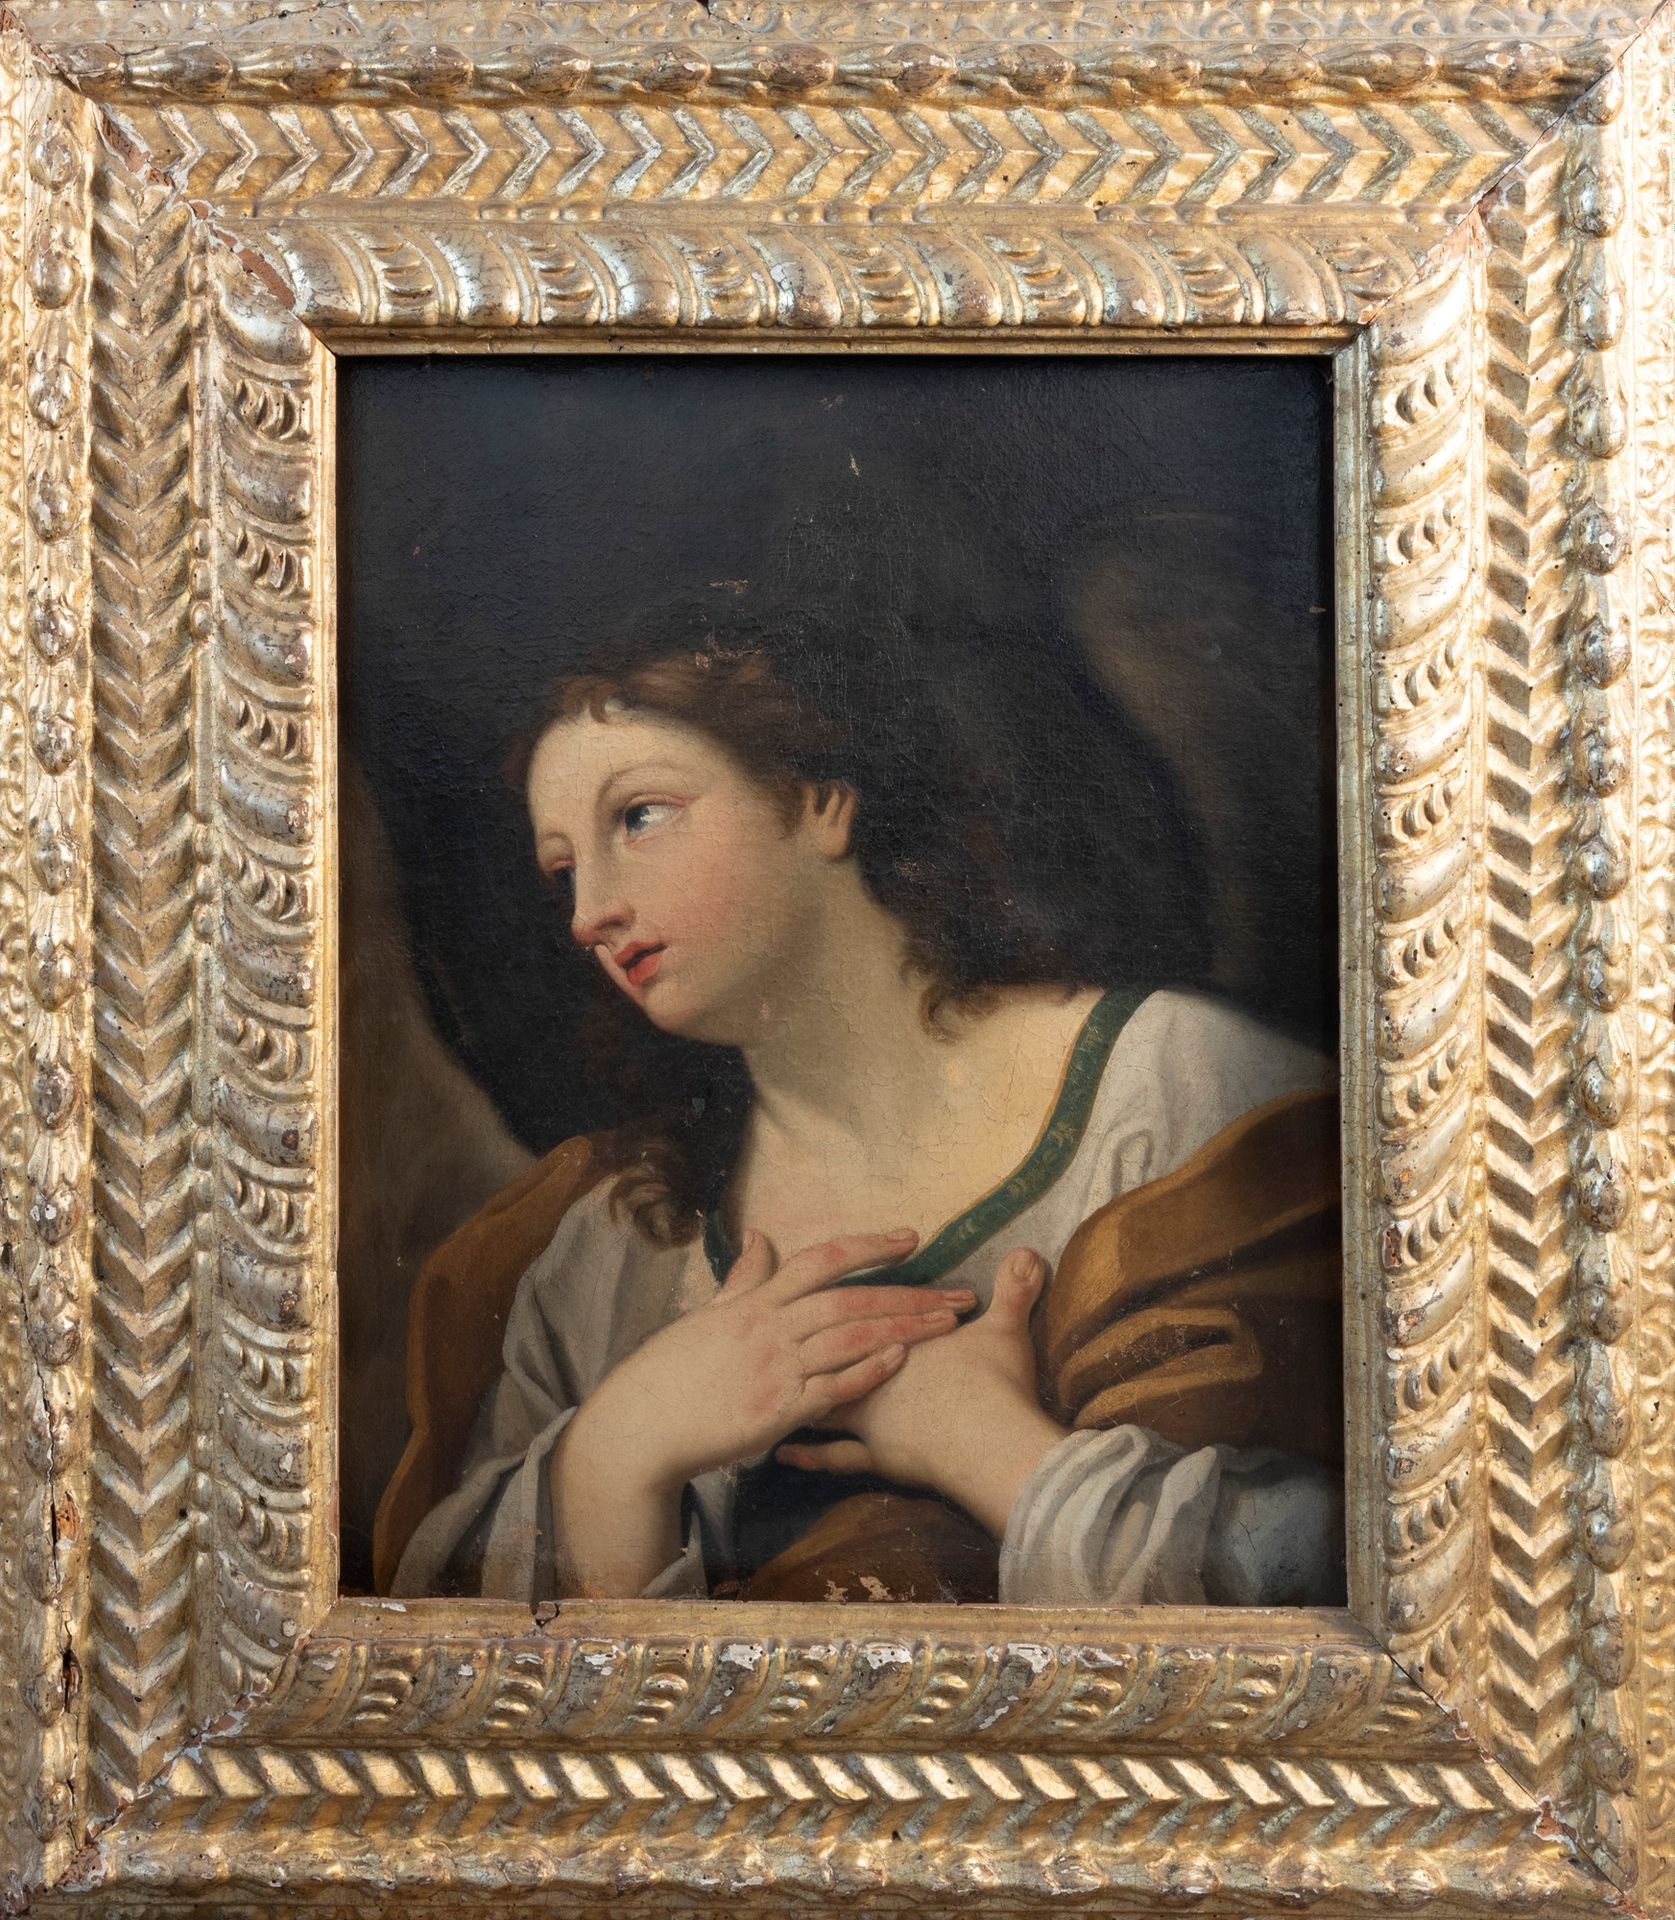 Null Scuola dell'Italia centrale, secolo XVII - 公布天使

布面油画
75.5 x 59.8厘米